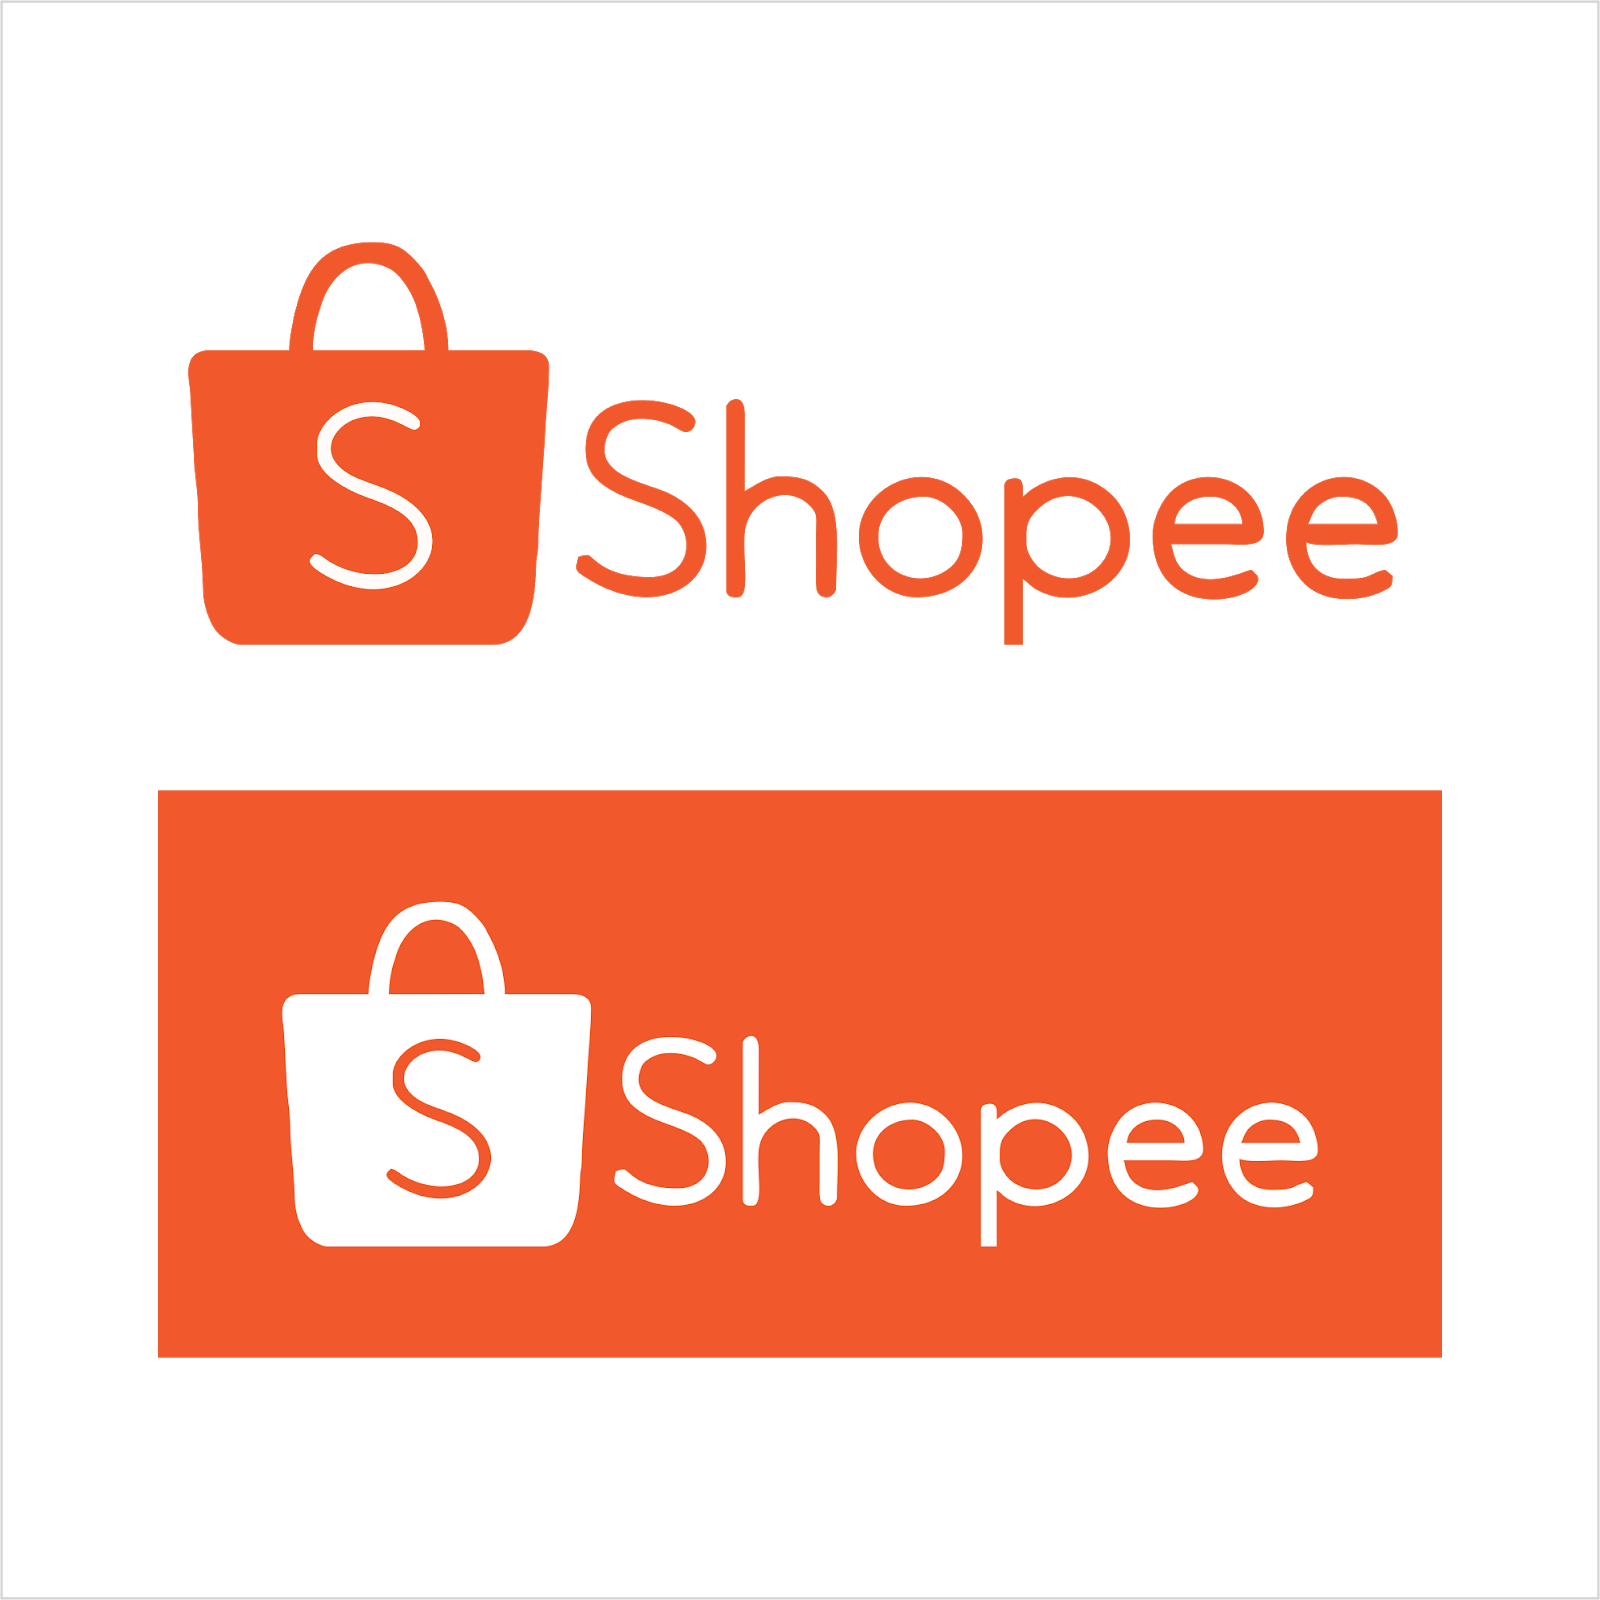  Shopee Logo Vector cdr Free Download BlogoVector